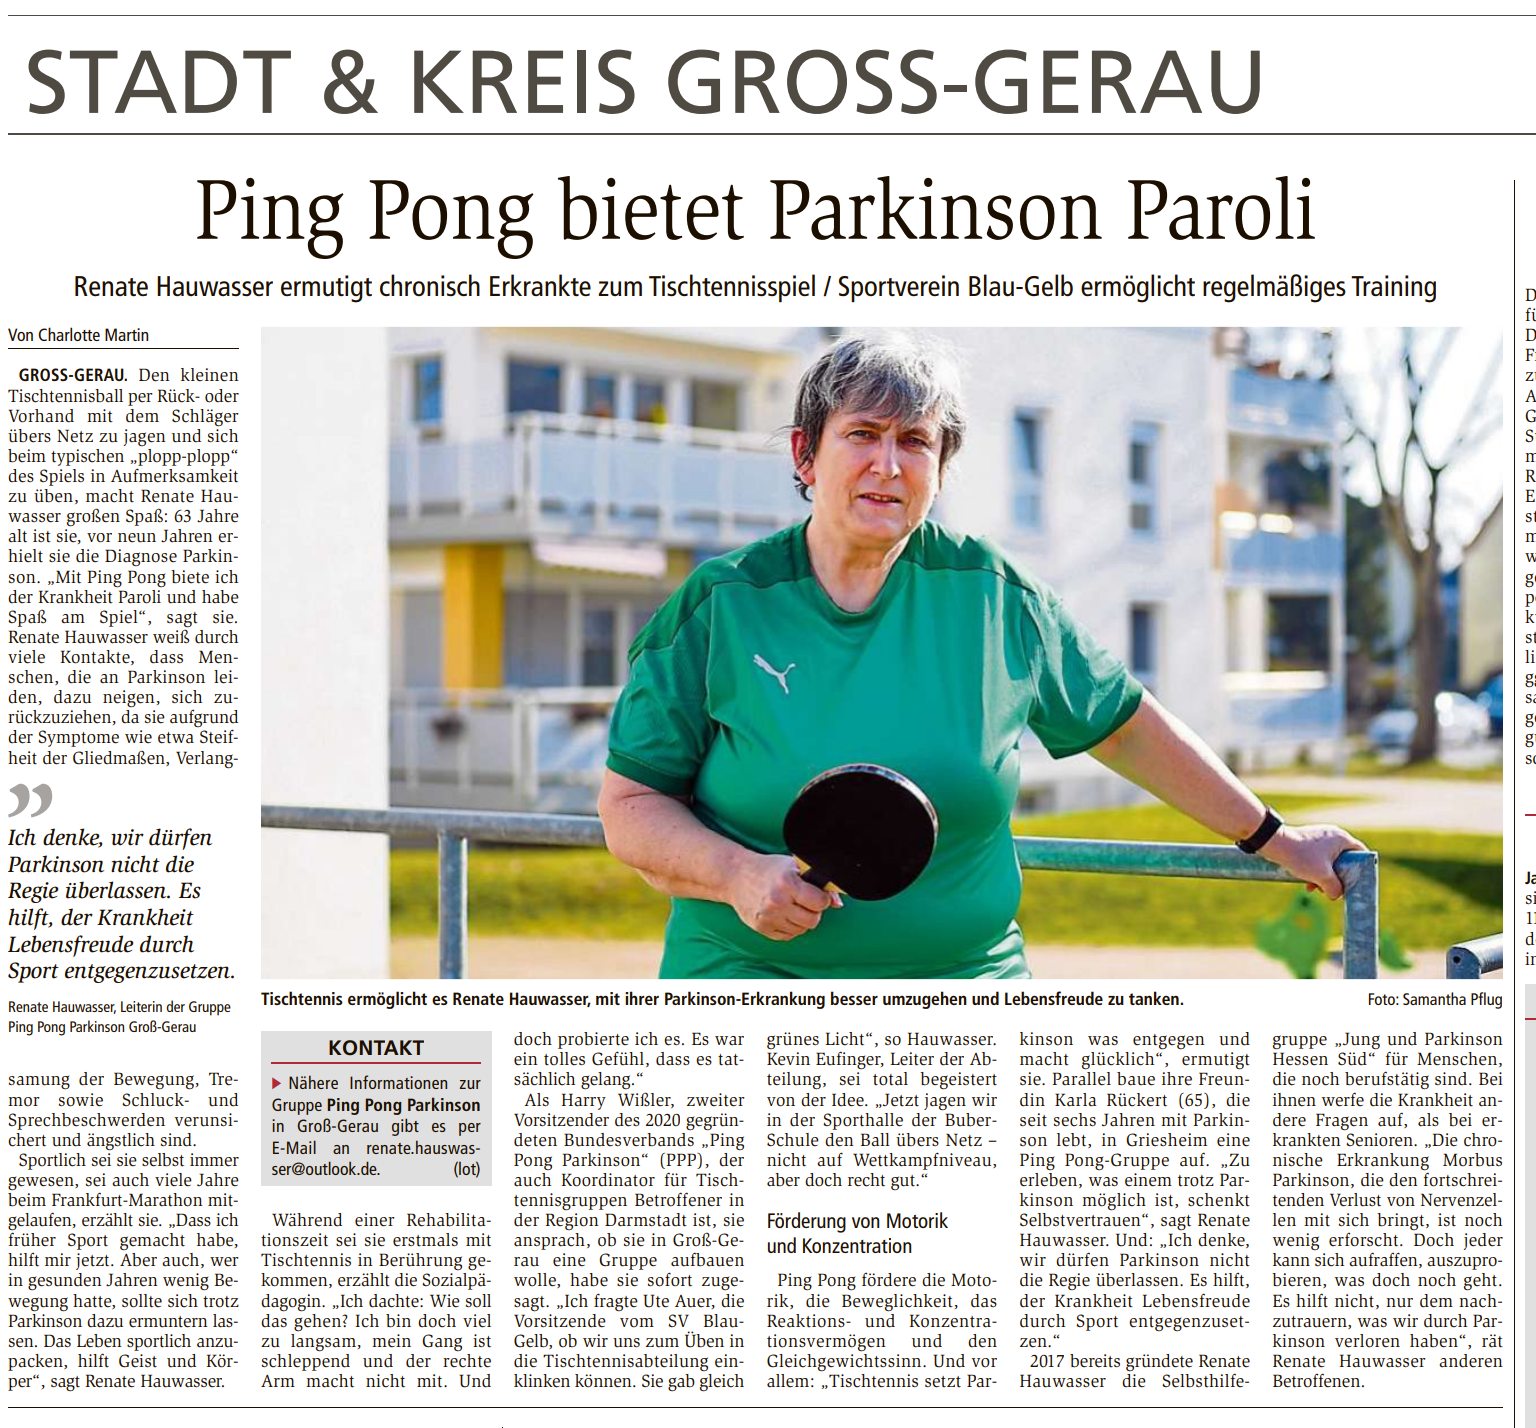 Ping Pong bietet Parkinson Paroli